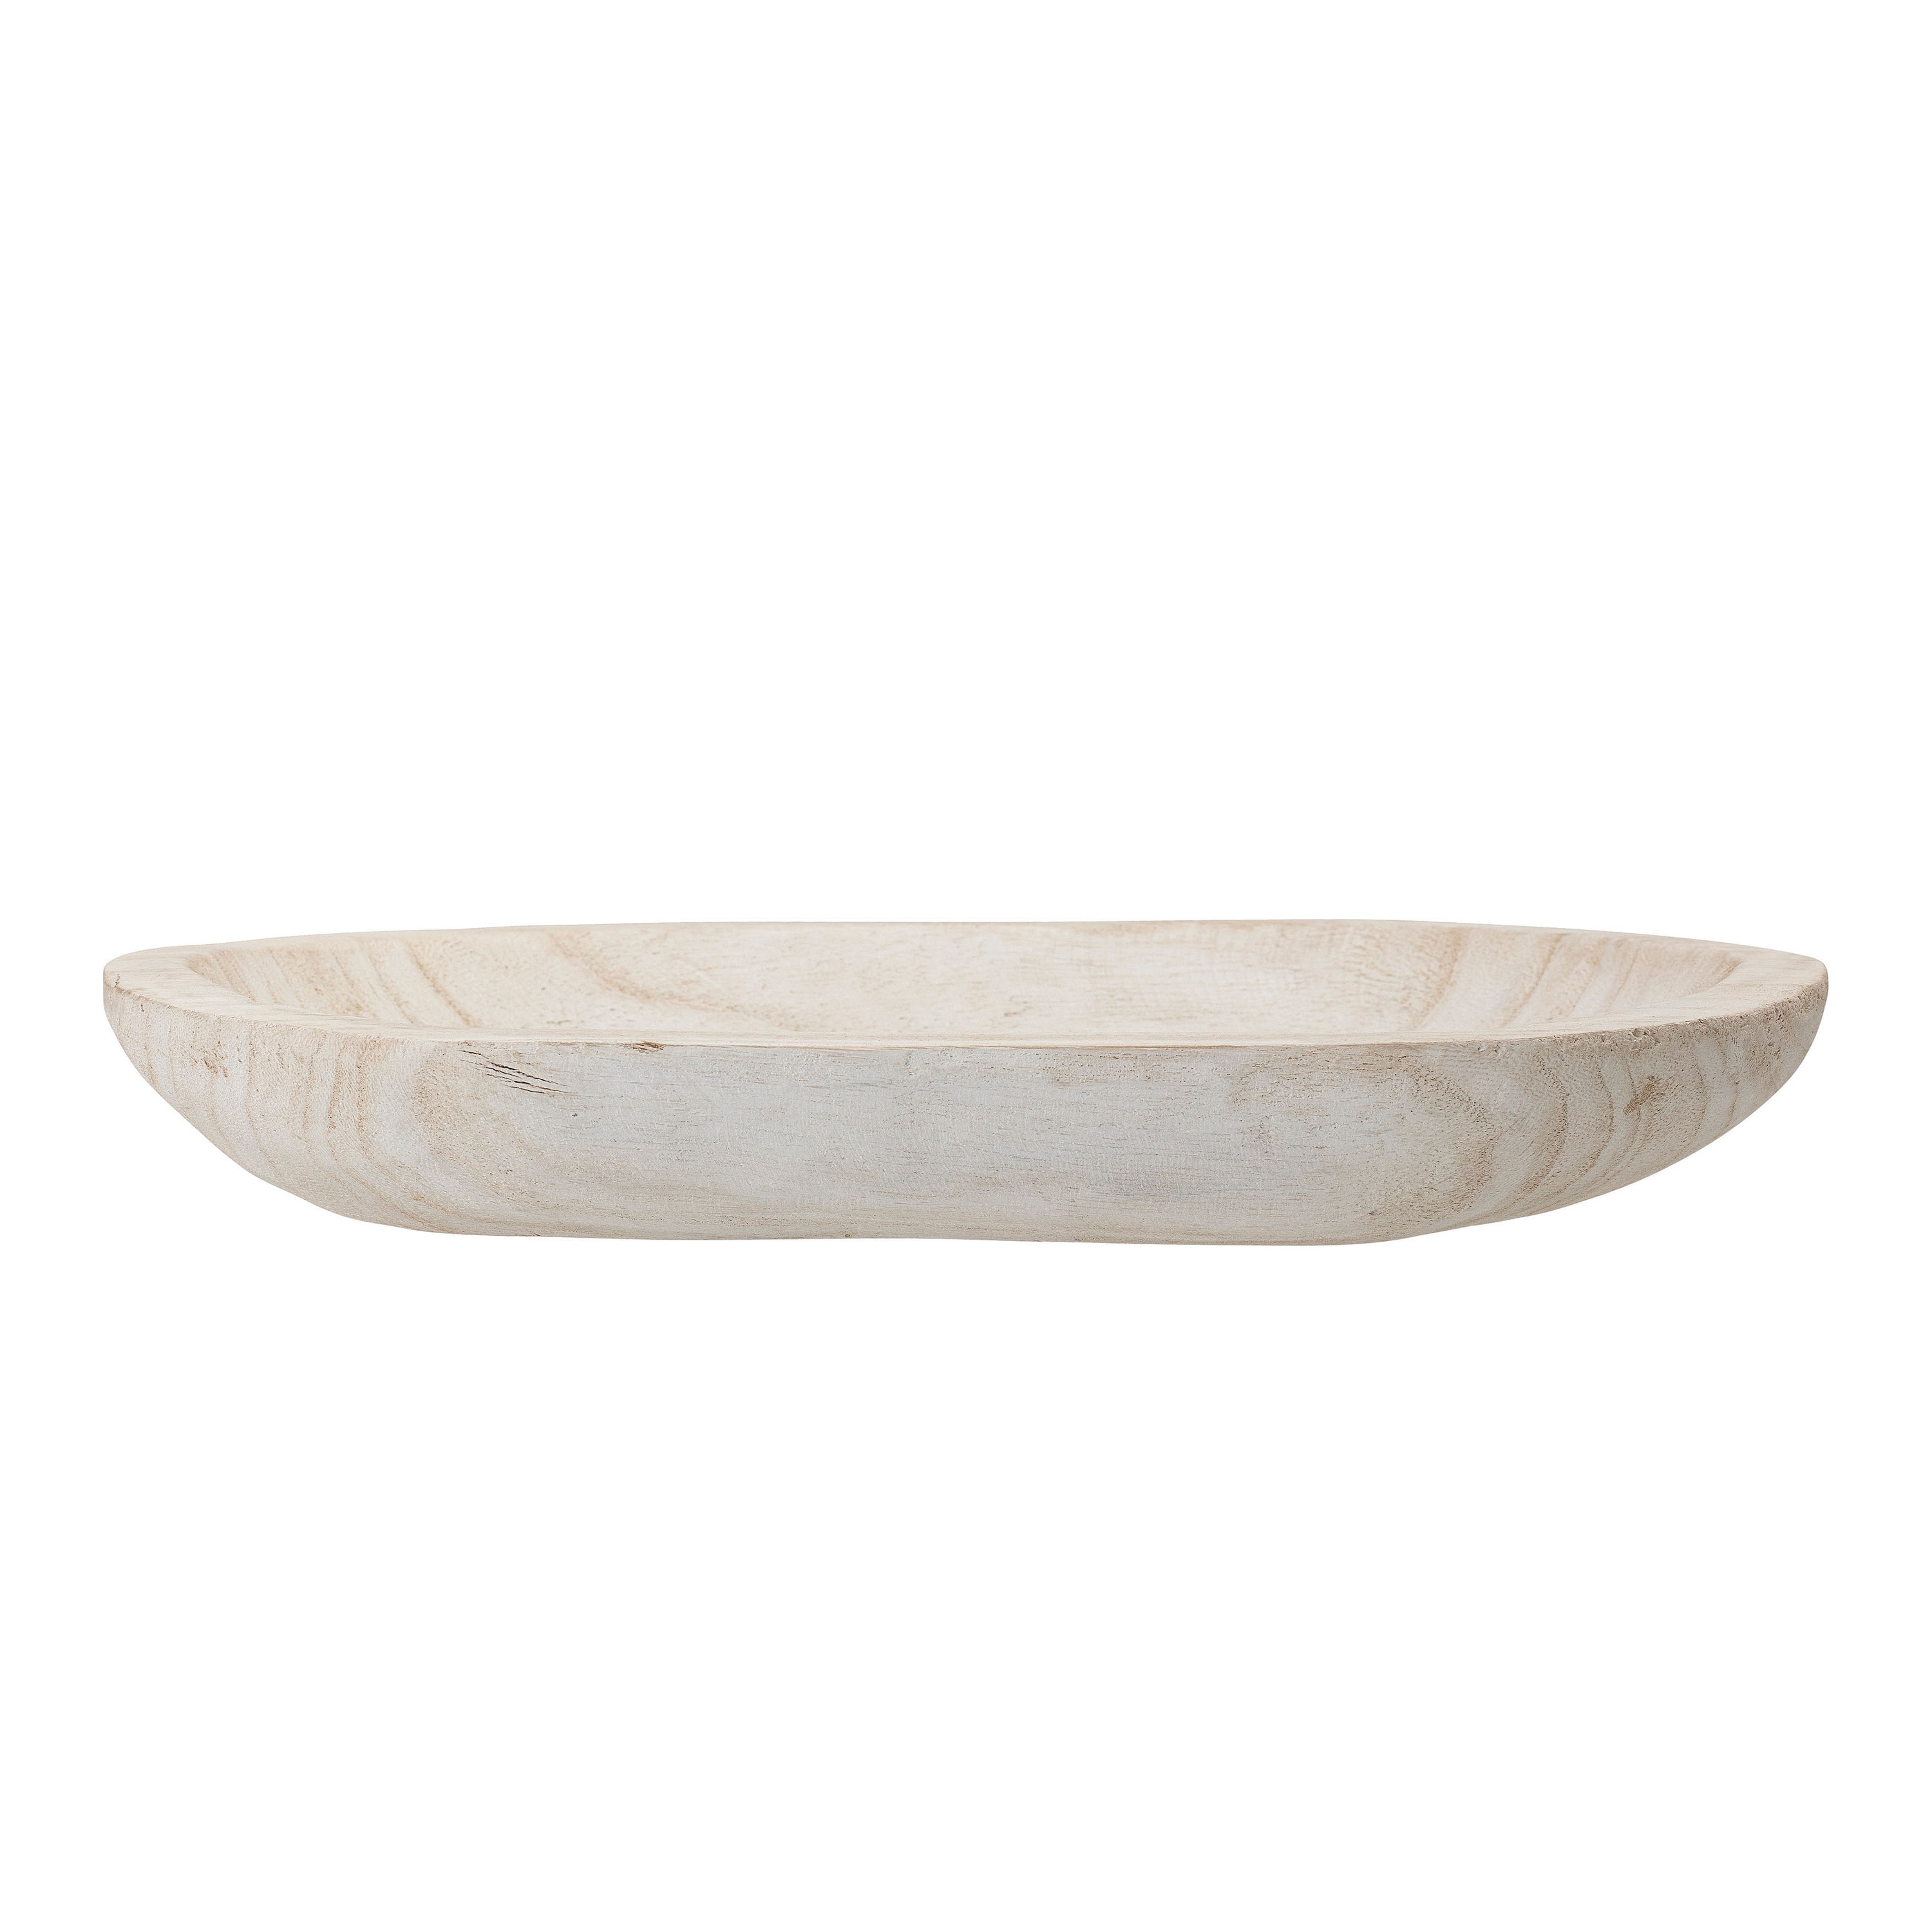 Hand-Carved Paulownia Wood Bowl with Whitewashed Finish - Image 0